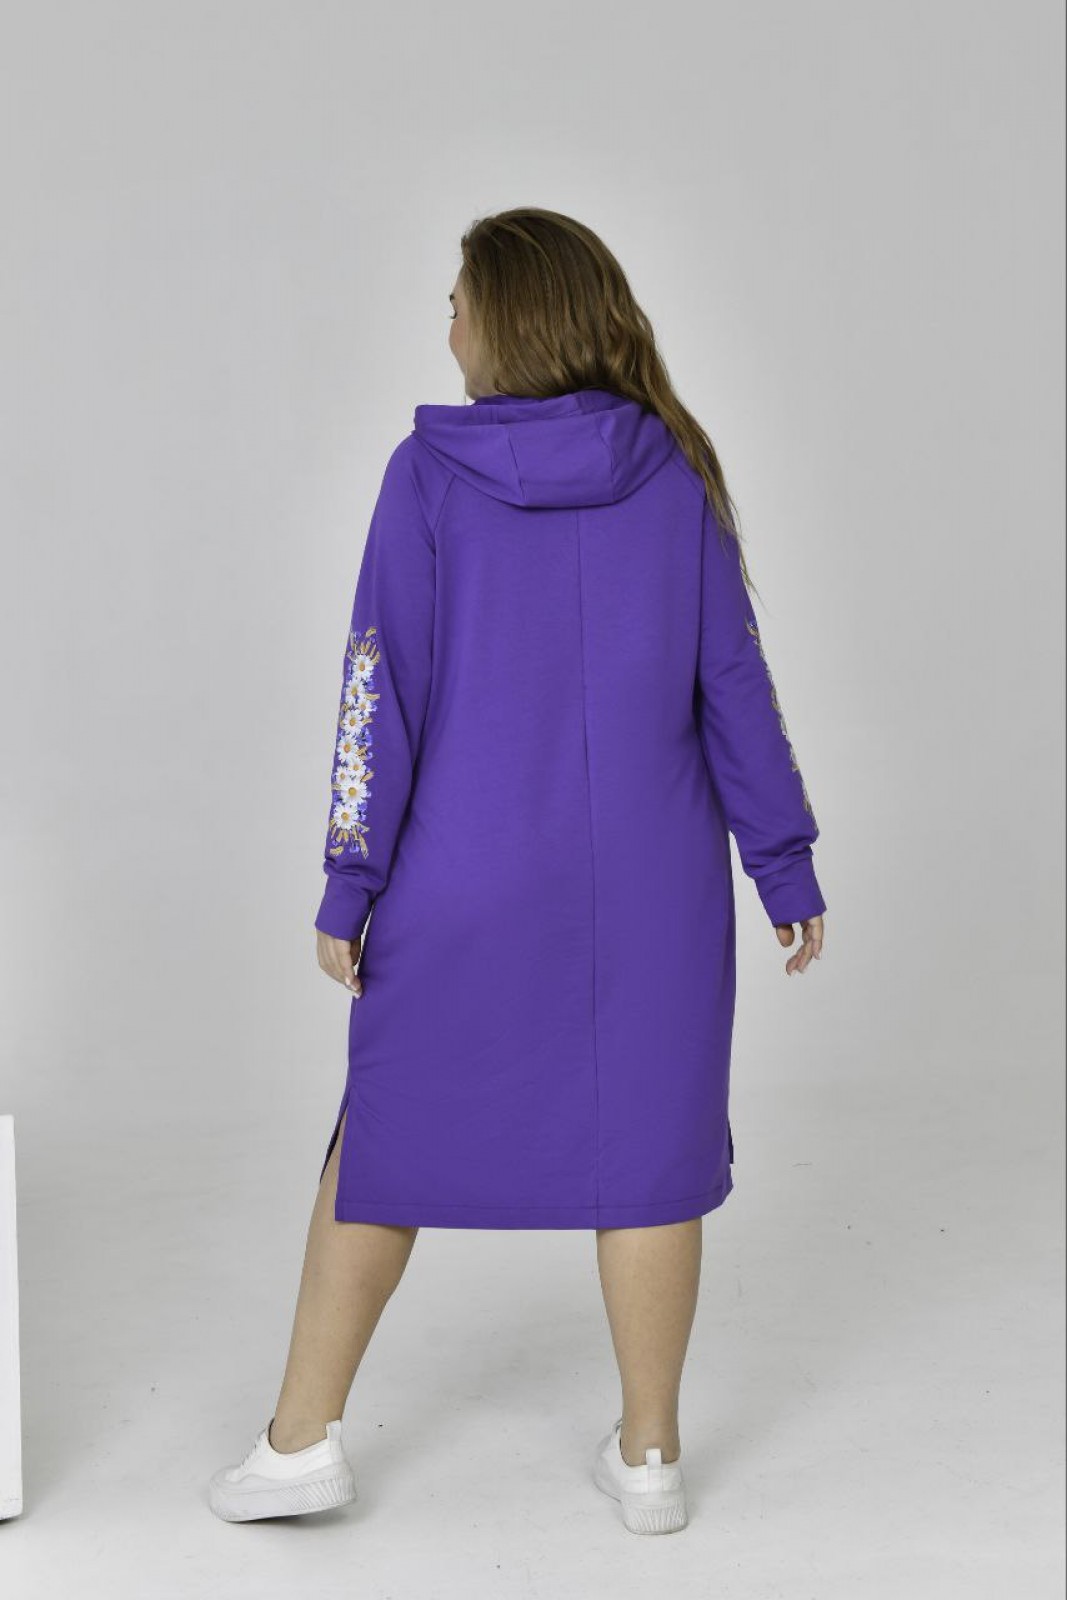 Жіноча сукня спорт з капюшоном колір фіолетовий р.52 454333